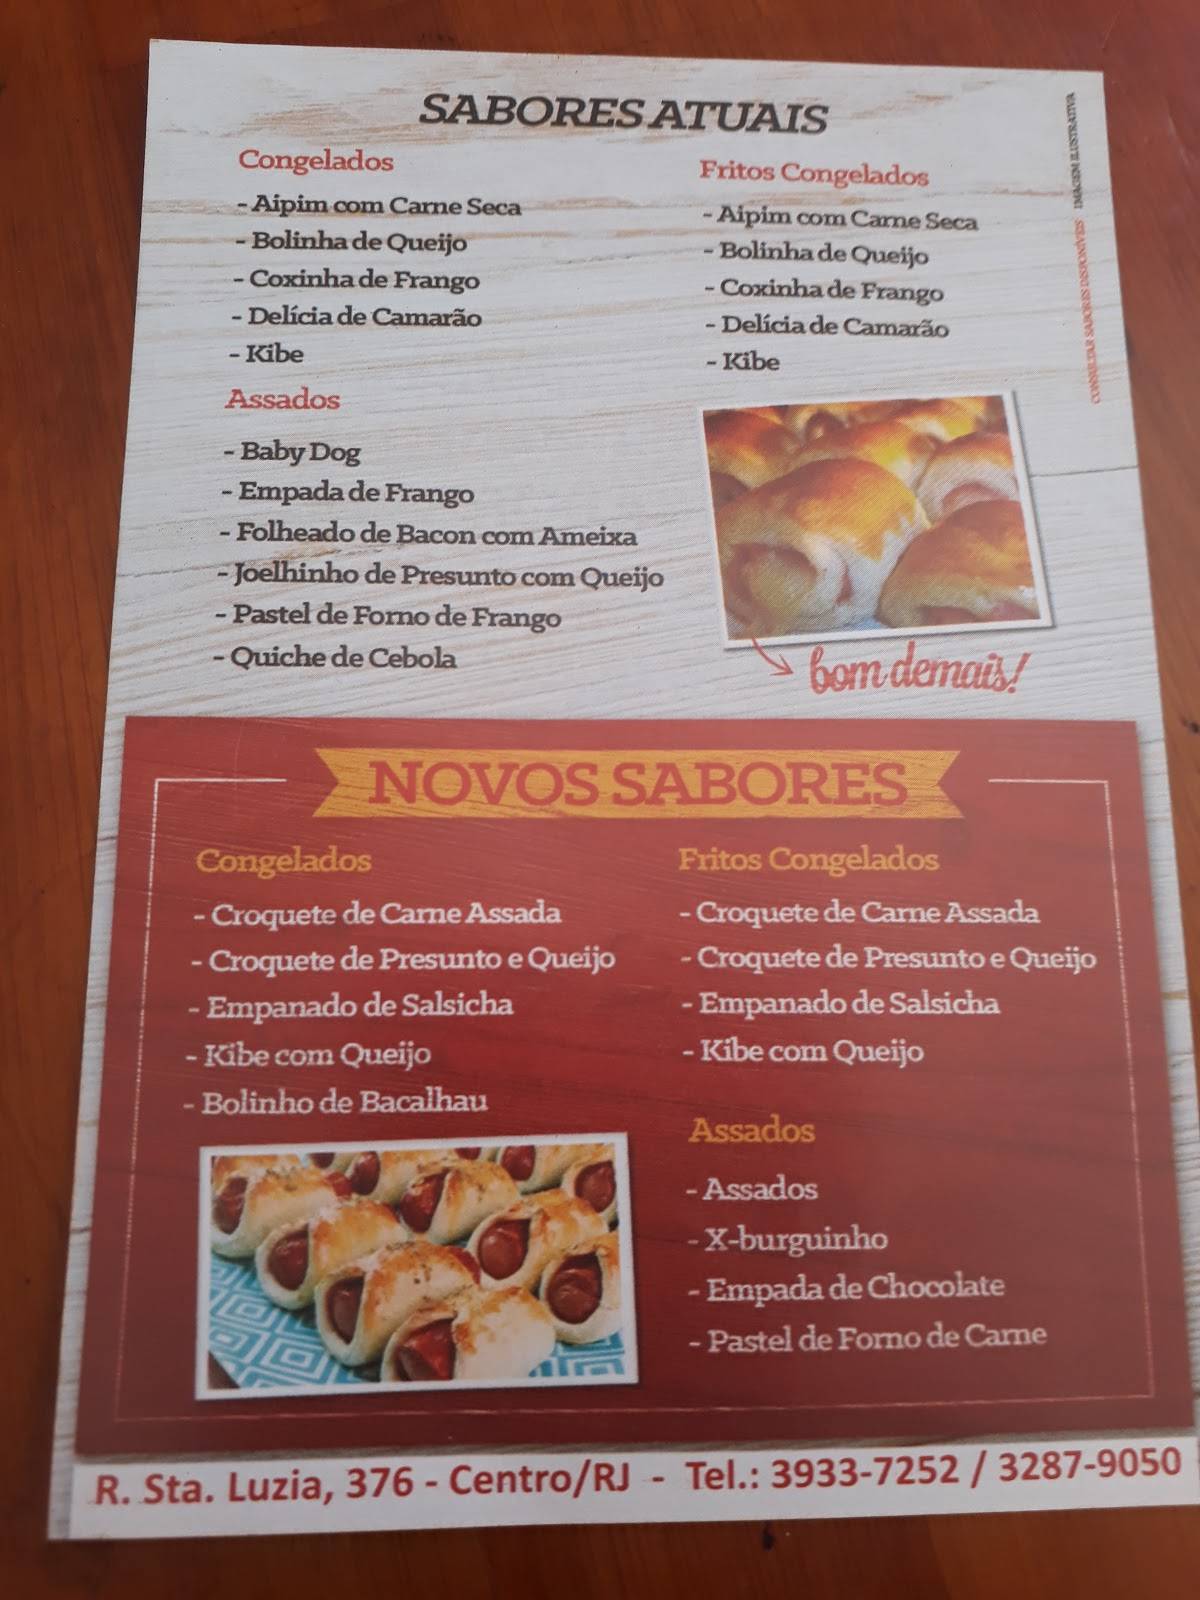 FABRICA DE BOLO VO ALZIRA TERESOPOLIS - Menu, Prices & Restaurant Reviews -  Tripadvisor